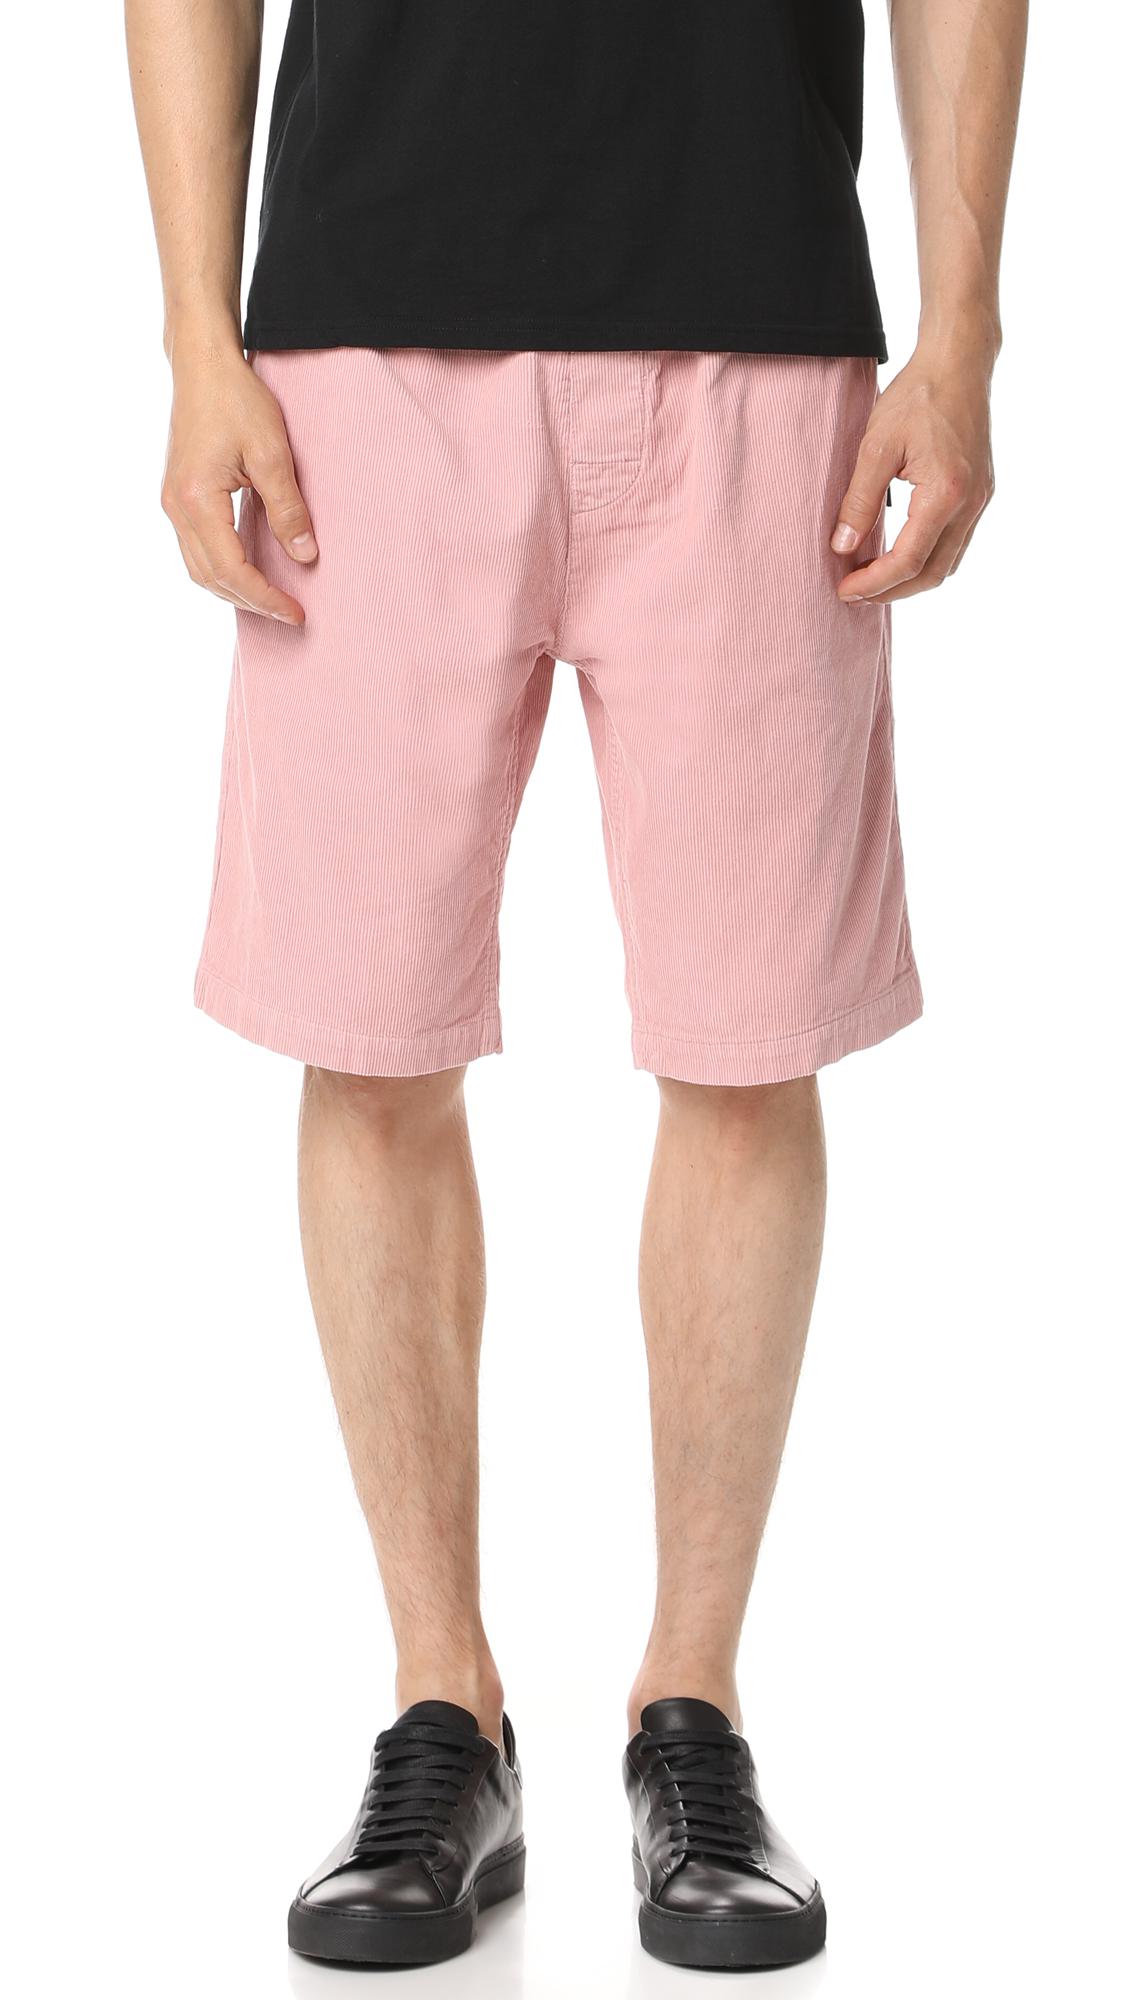 pink corduroy shorts